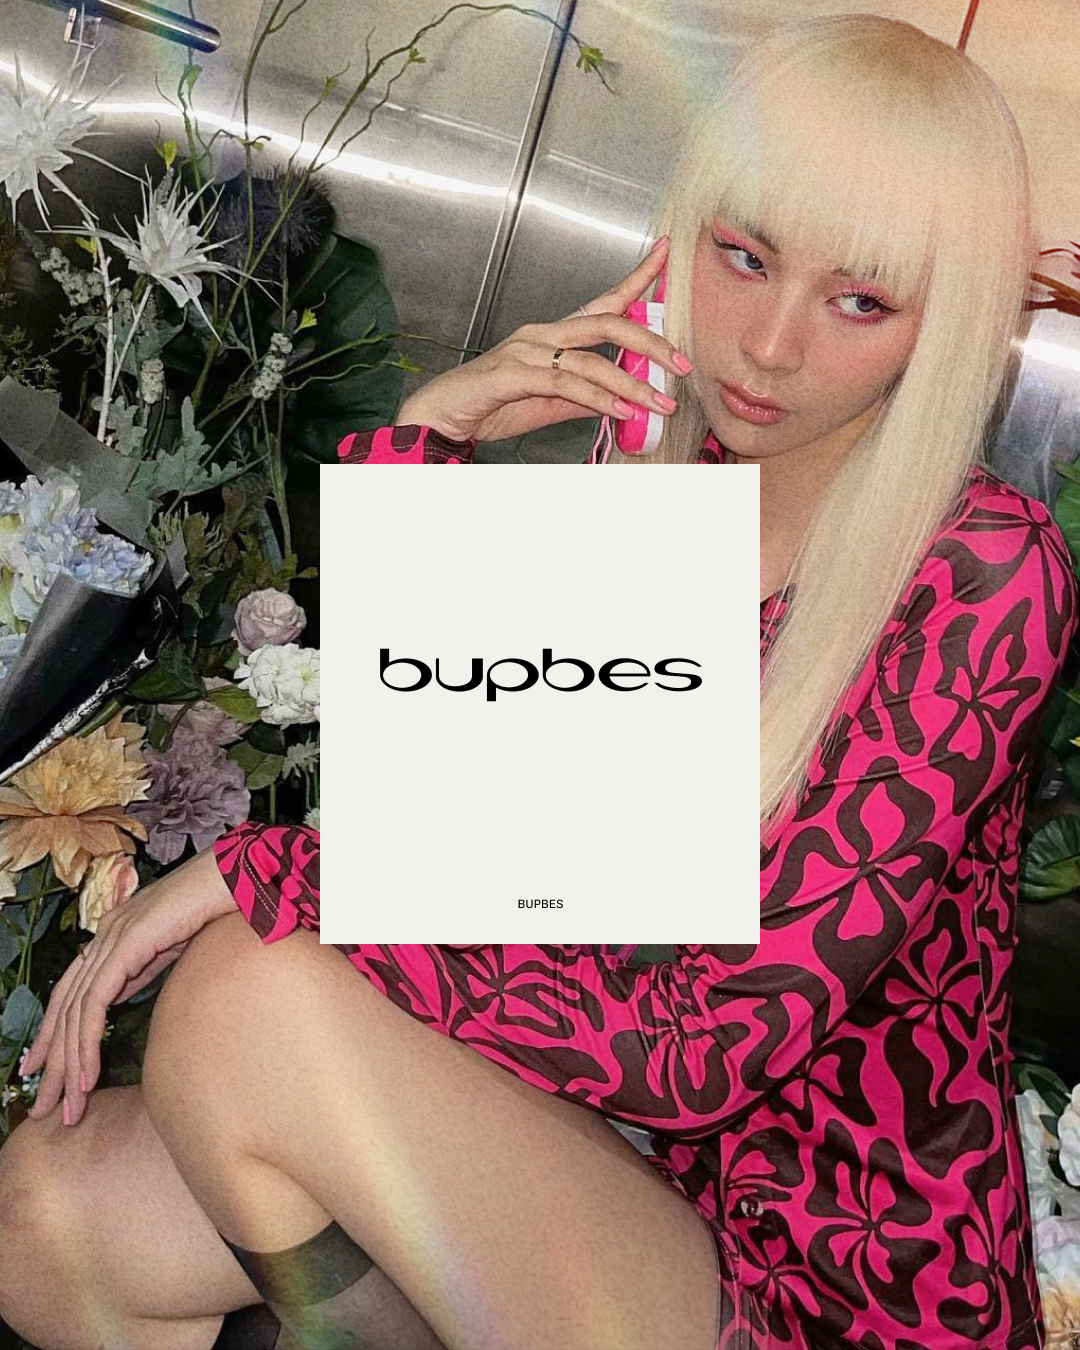 BUPBES - “tân binh khủng long” của làng local brand Việt: Ra mắt 1 năm nhưng mê hoặc loạt sao quốc tế